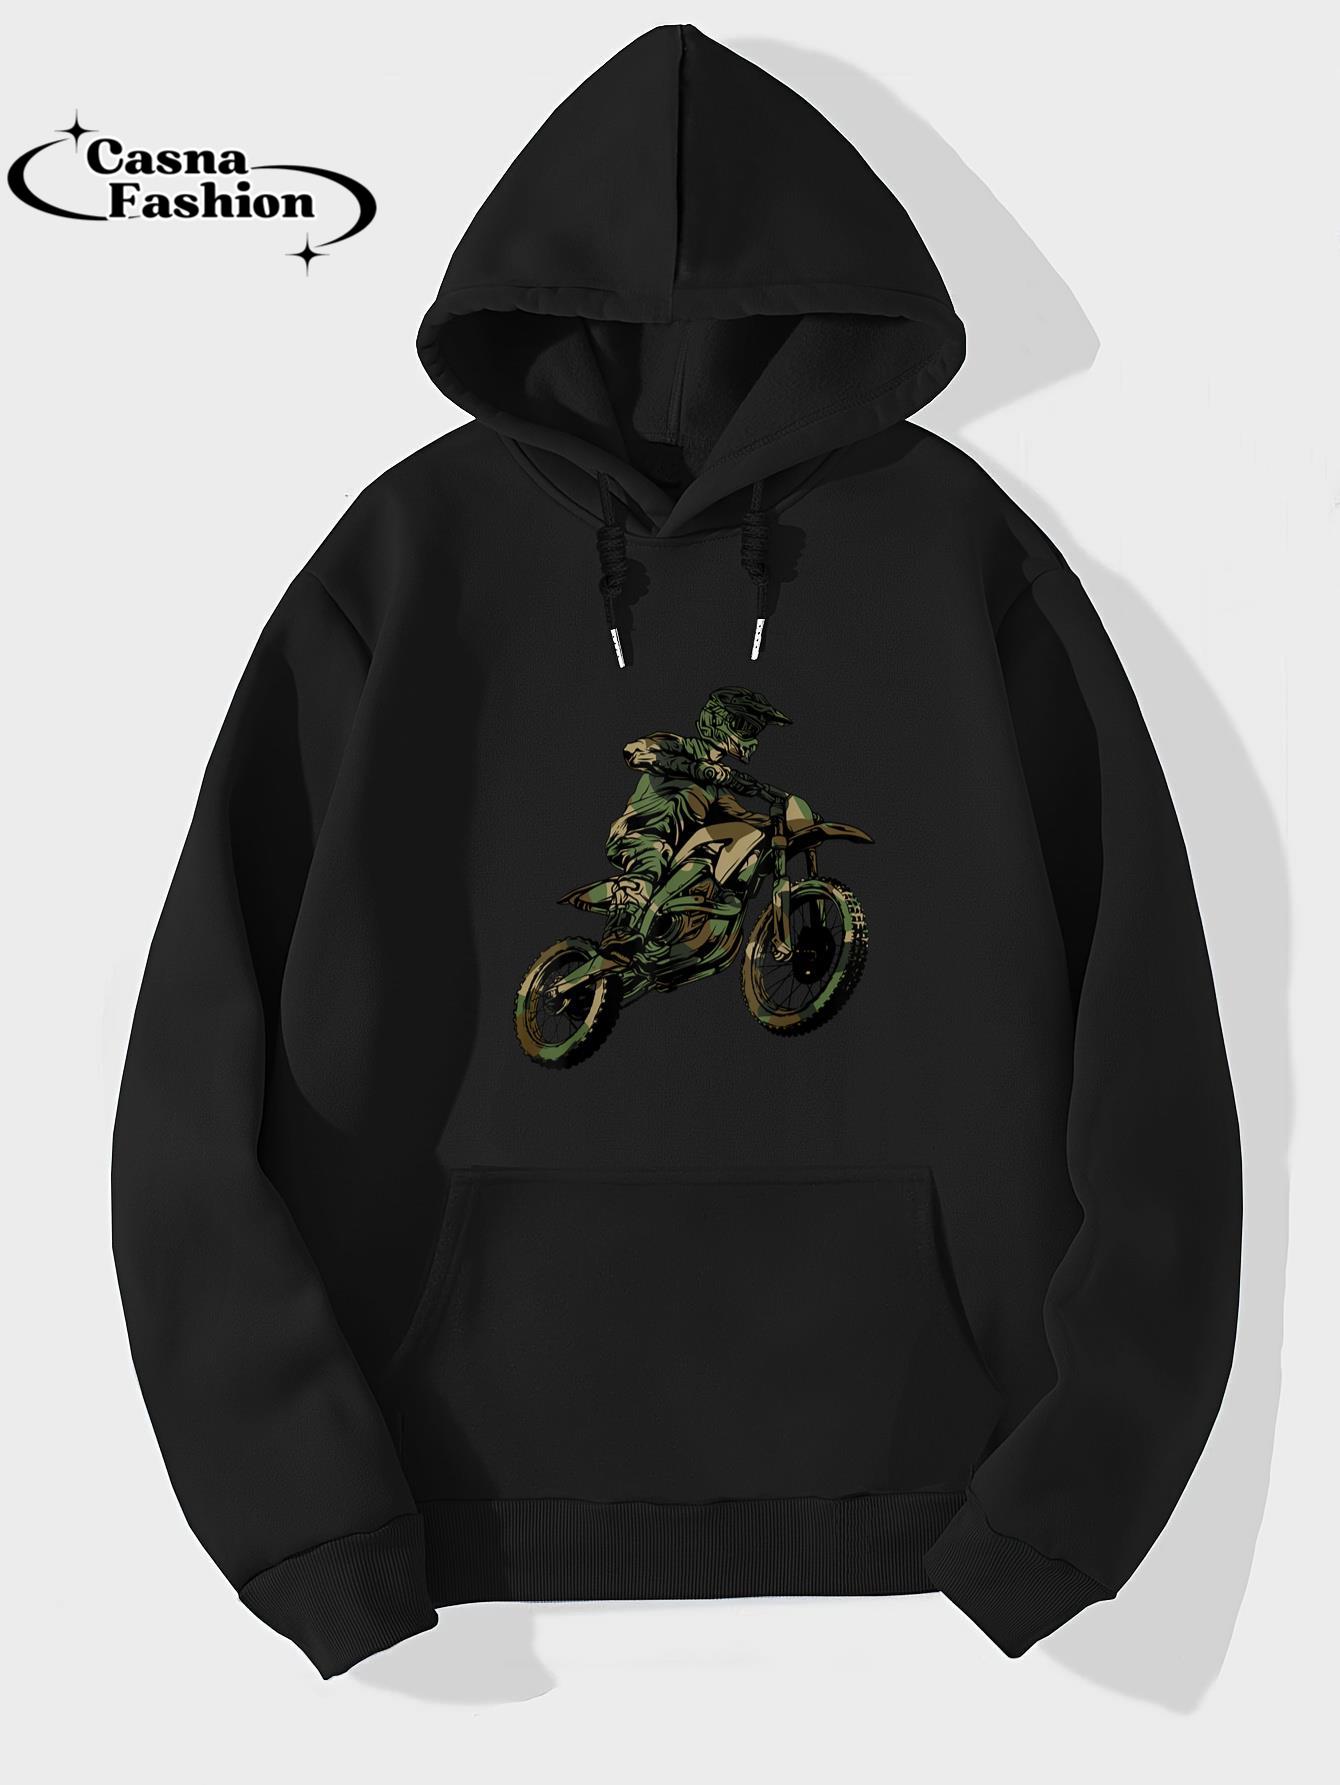 casnafashion_Hoodie_Best Dirt Bike Art For Men Women Dirtbike Motorcycle Lovers T-Shirt_hoodie_black hoodie